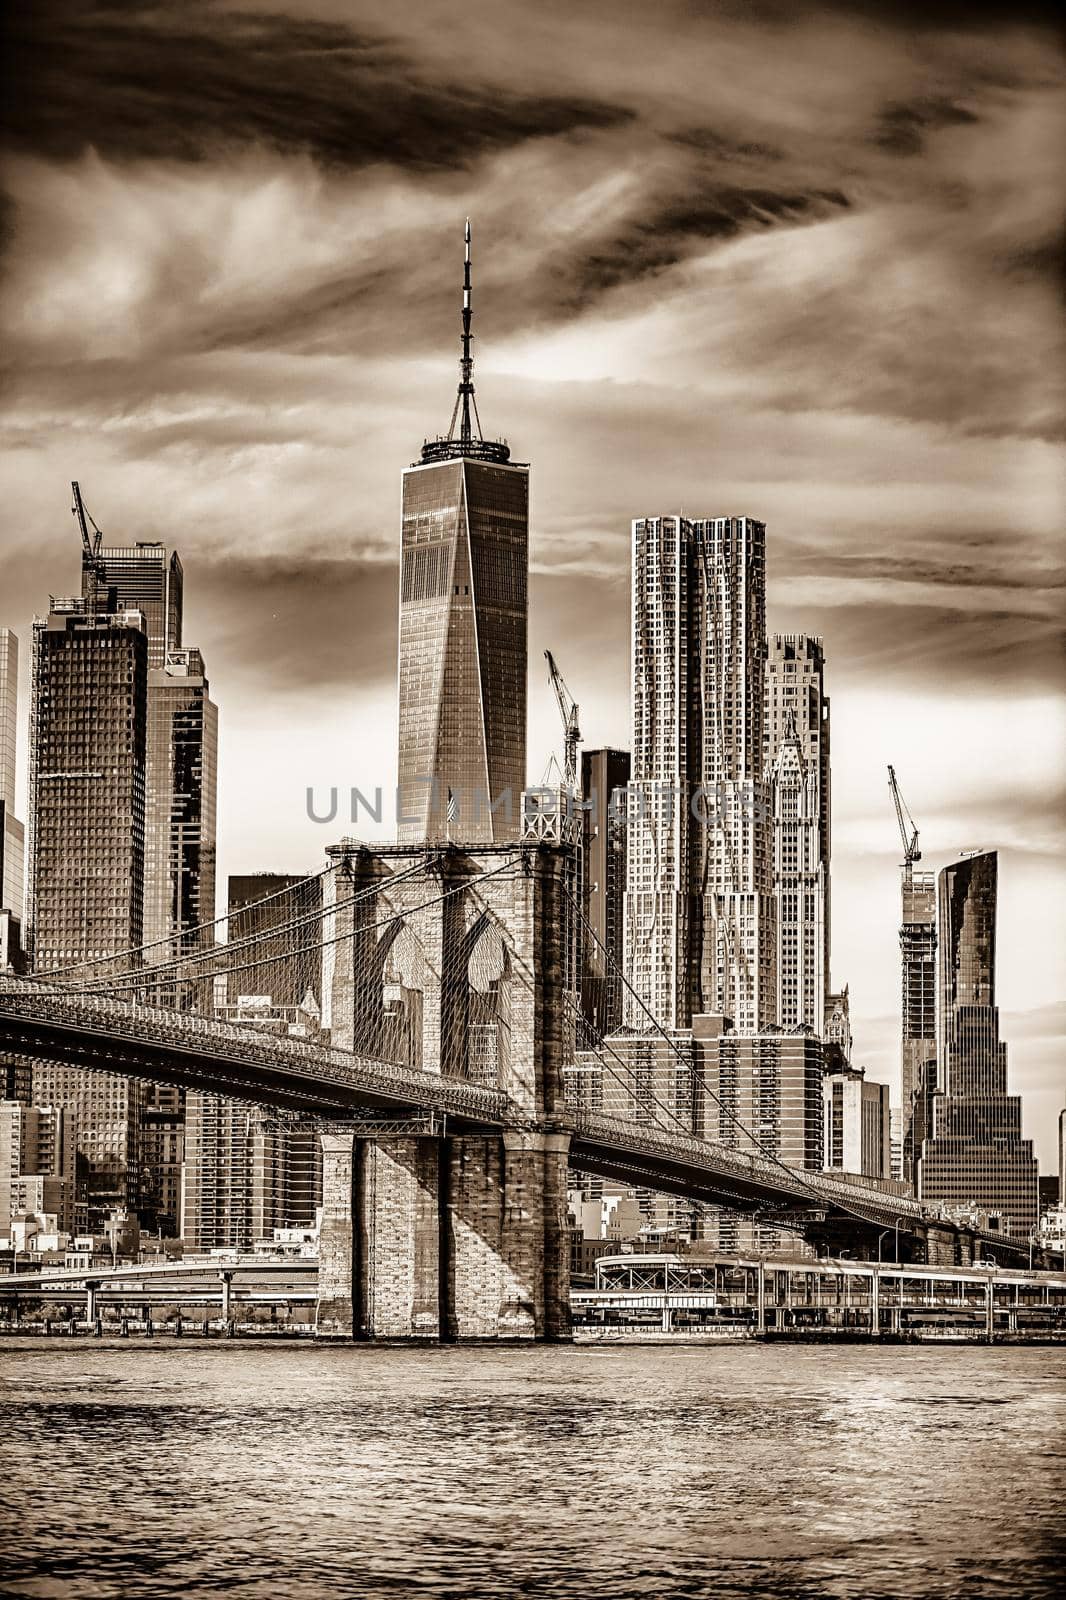 lower manhattan new york city panorama